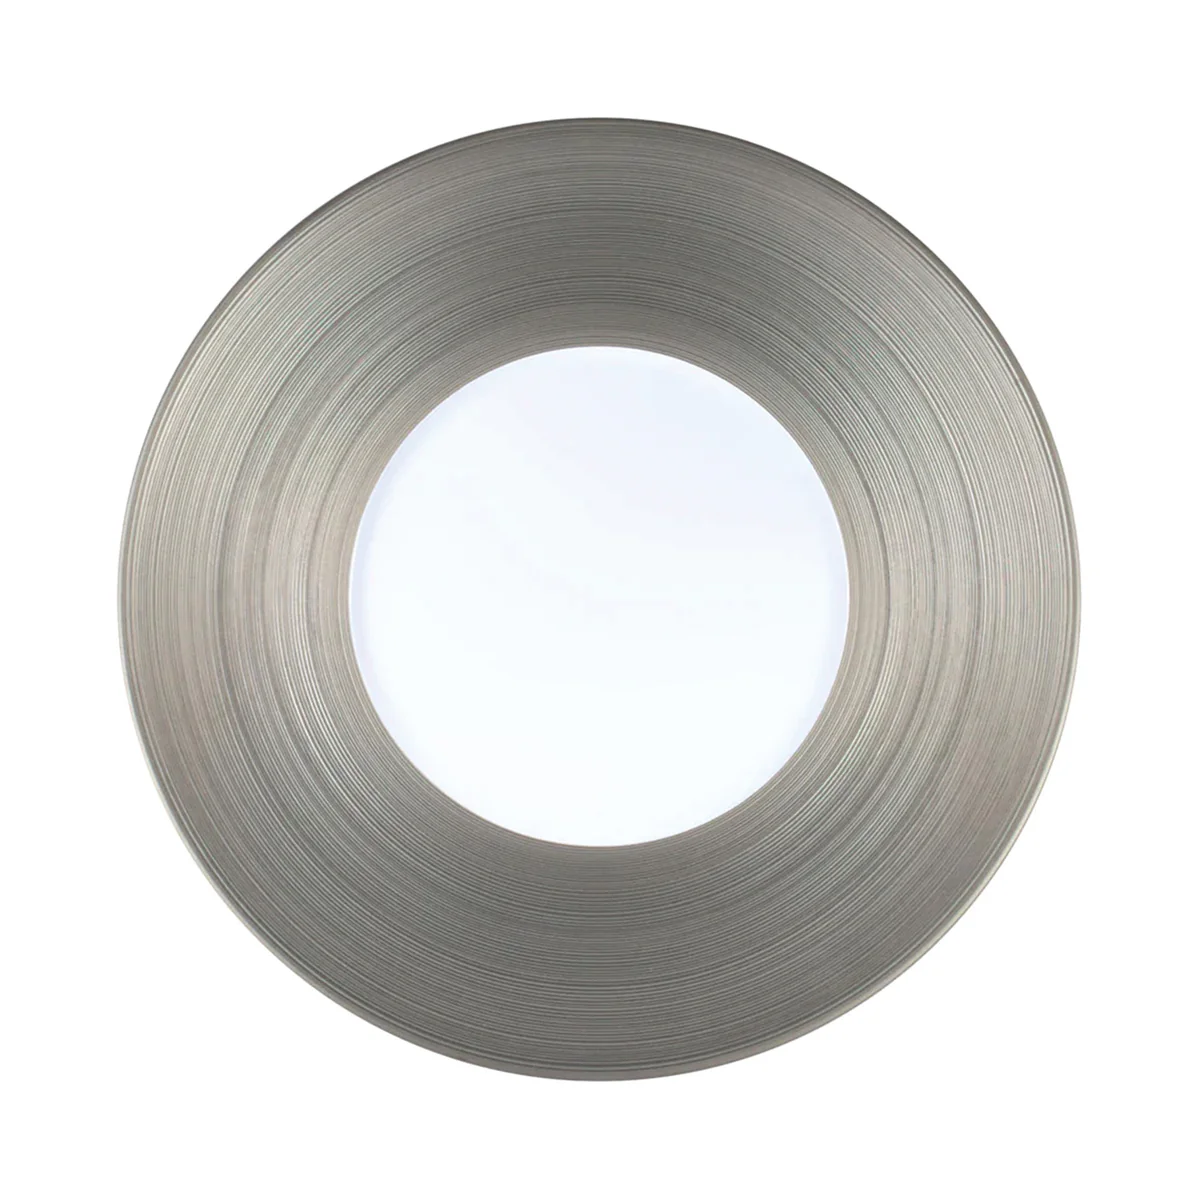 HEMISPHERE Platinum - 29 cm plate